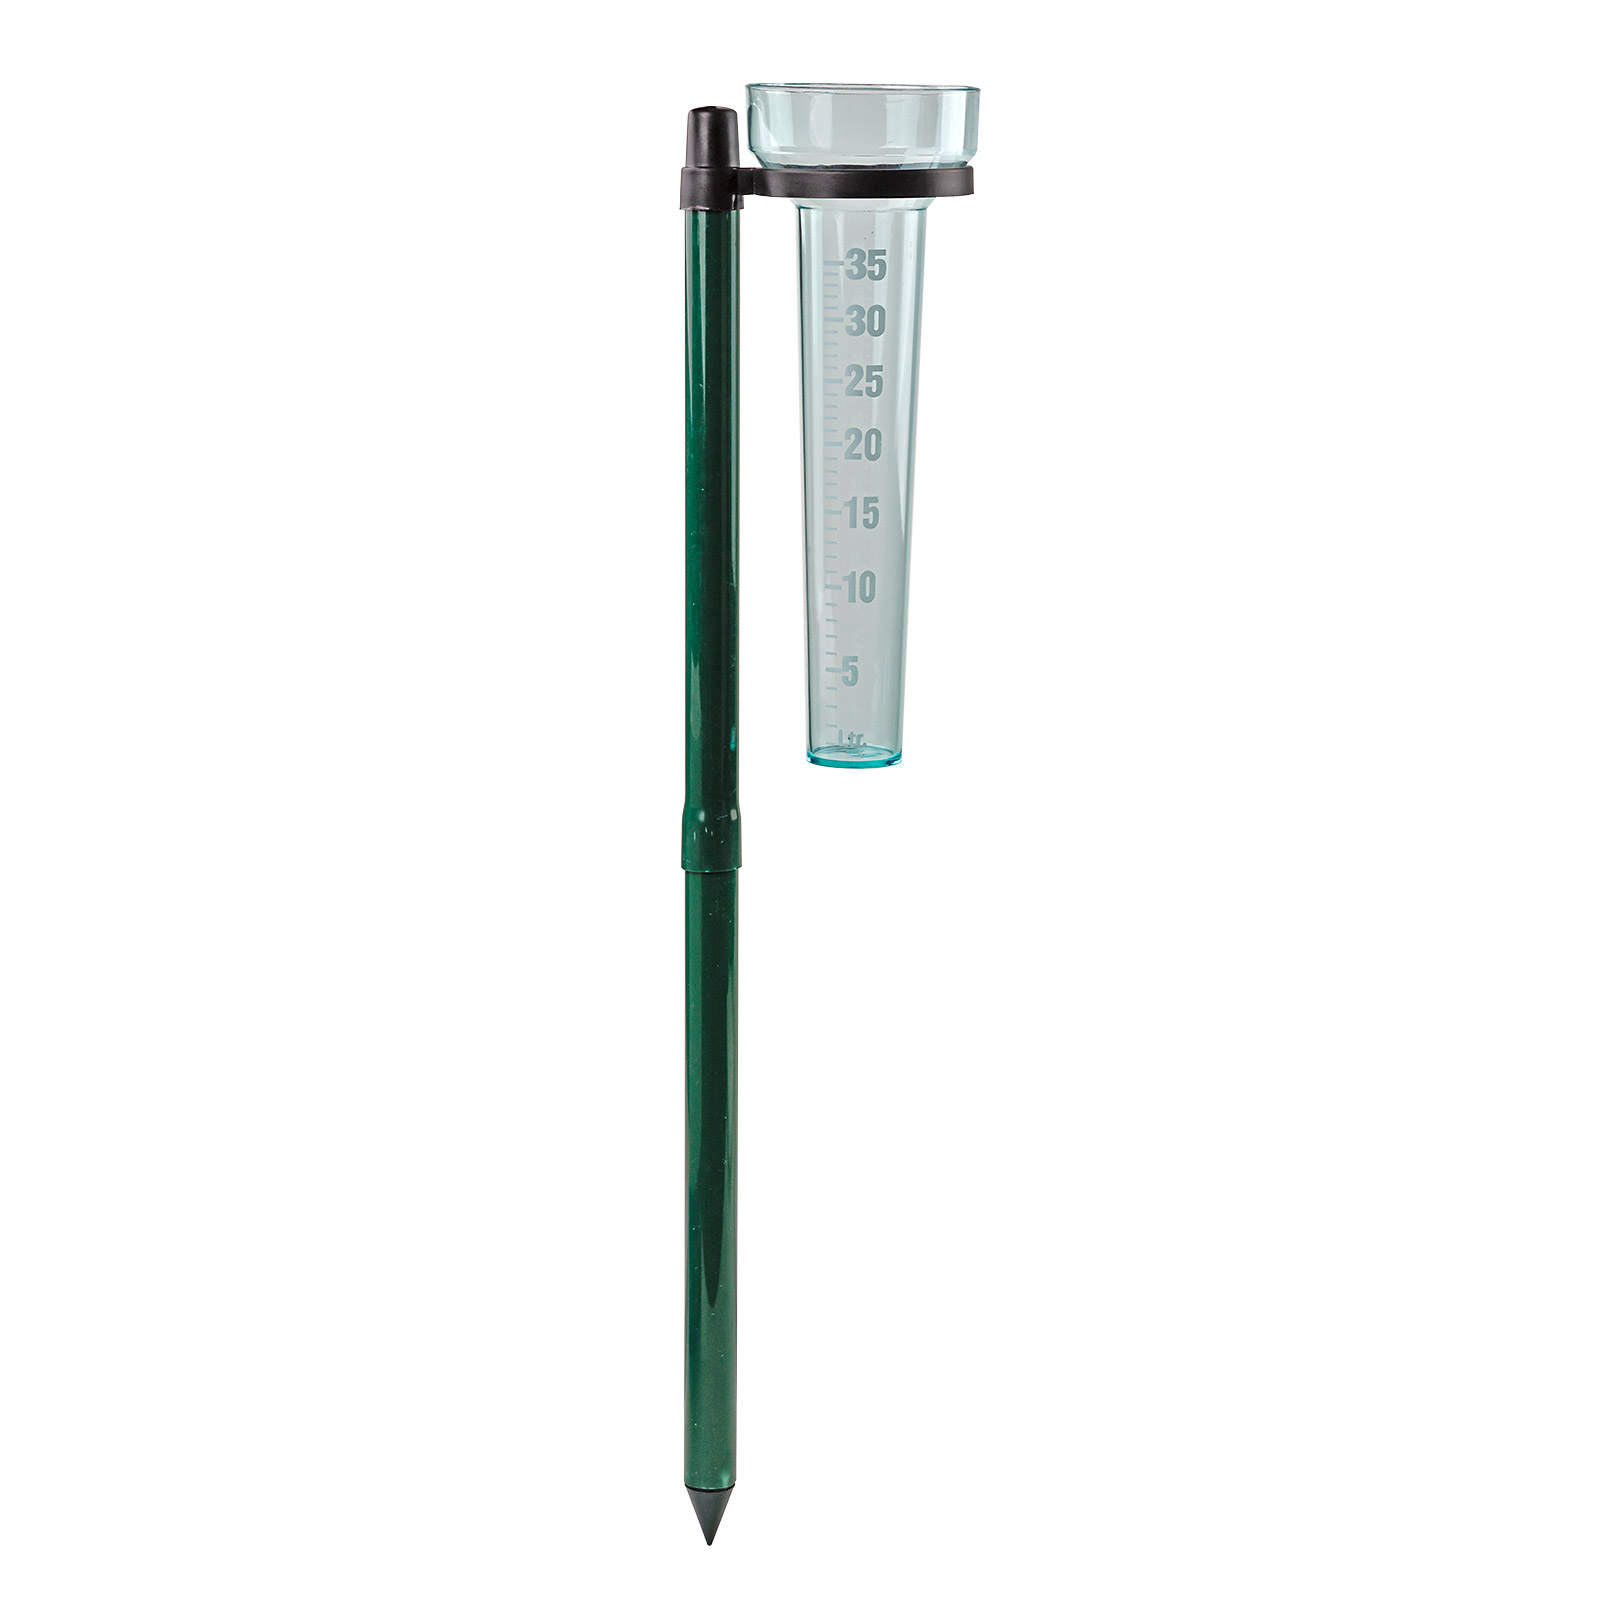 Niederschlagmesser / Regenmesser, mit grünem Erdspieß, Messbereich 35 Liter